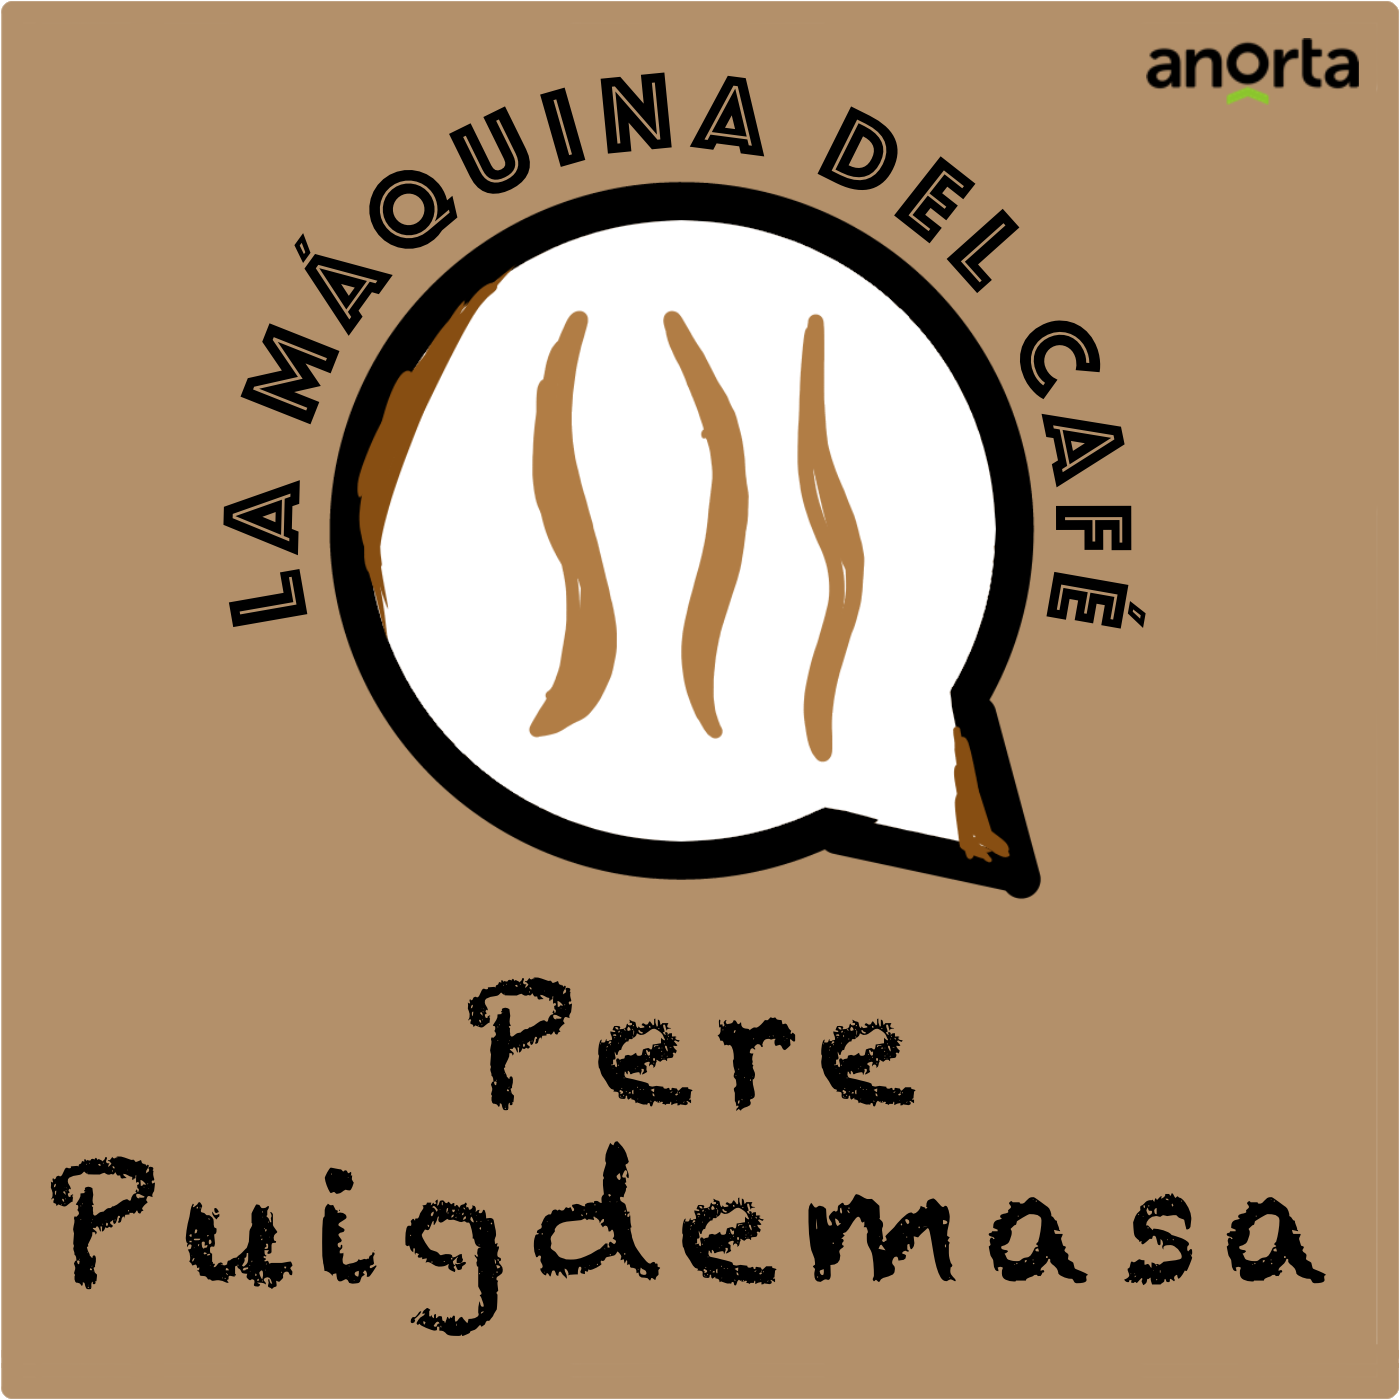 Pere Puigdemasa